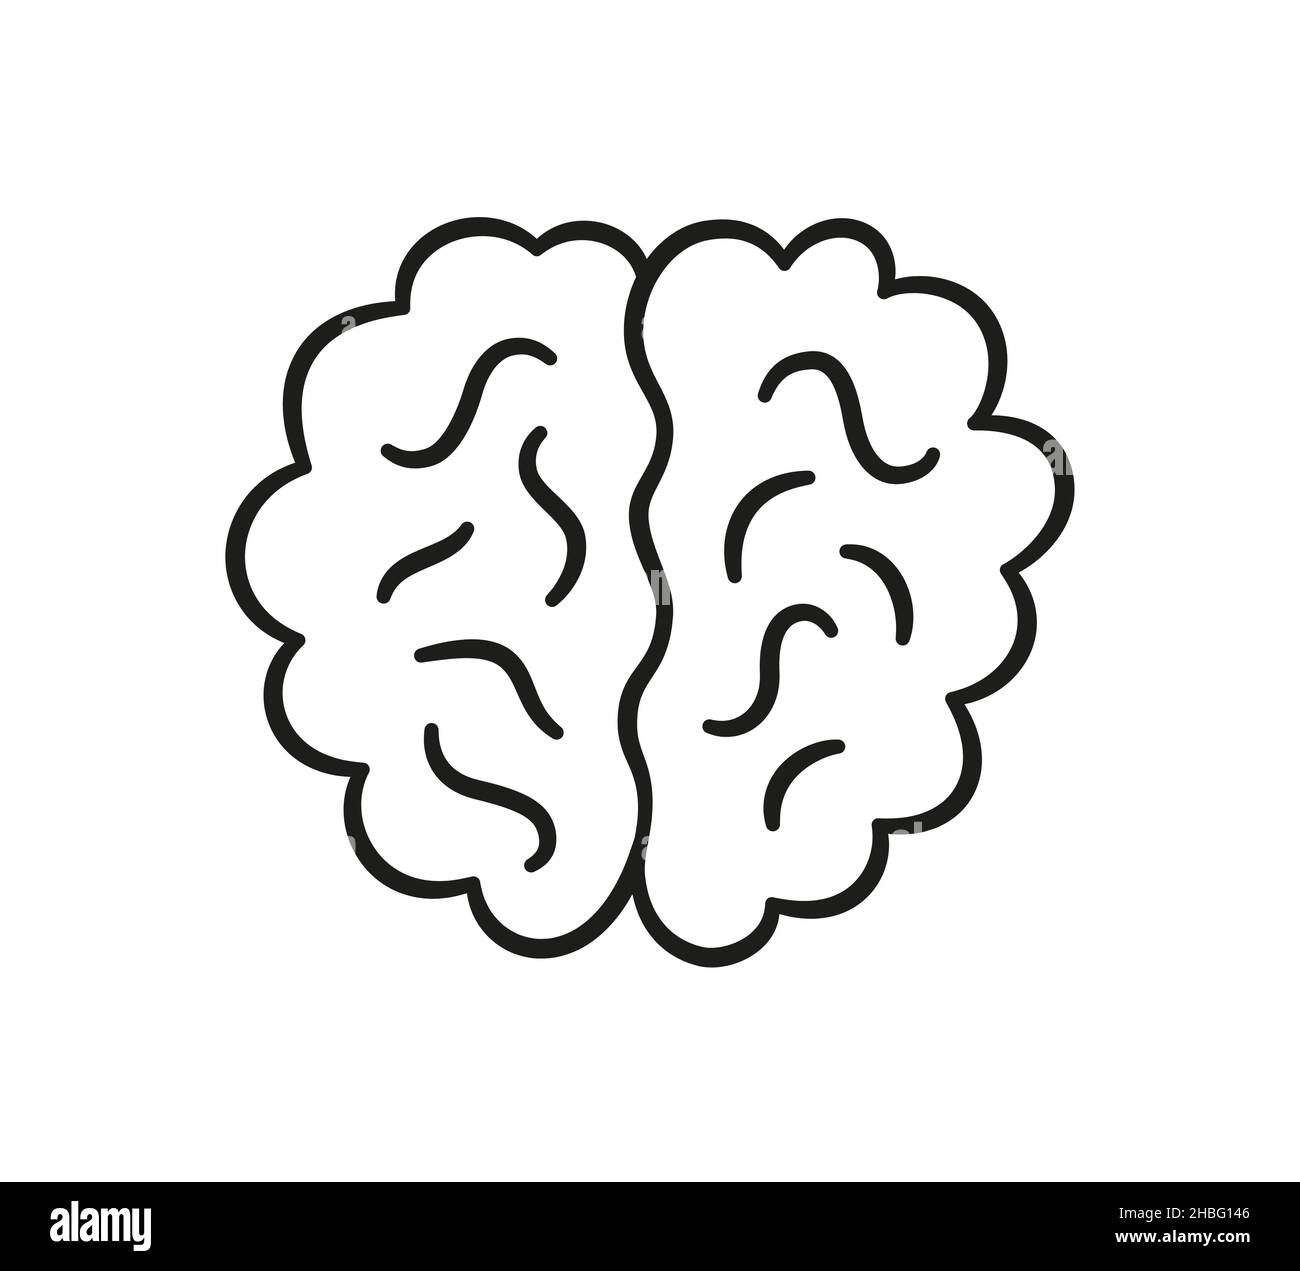 Icona del cervello umano in stile doodle. Simbolo della mente. Disegno dei bambini. Illustrazione vettoriale disegnata a mano isolata su sfondo bianco Illustrazione Vettoriale